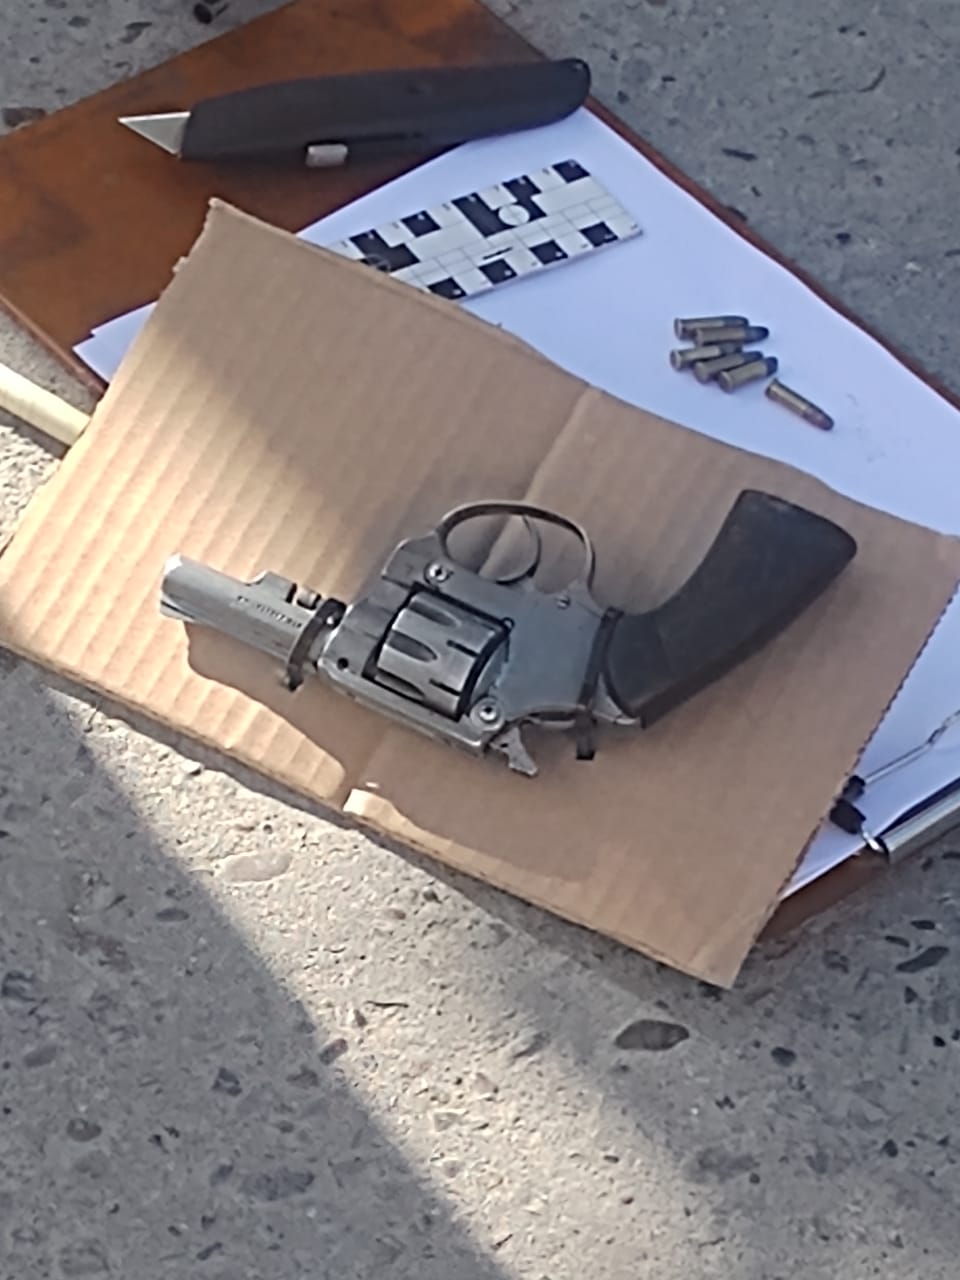 El arma tenía seis cartuchos. Foto: Gentileza.